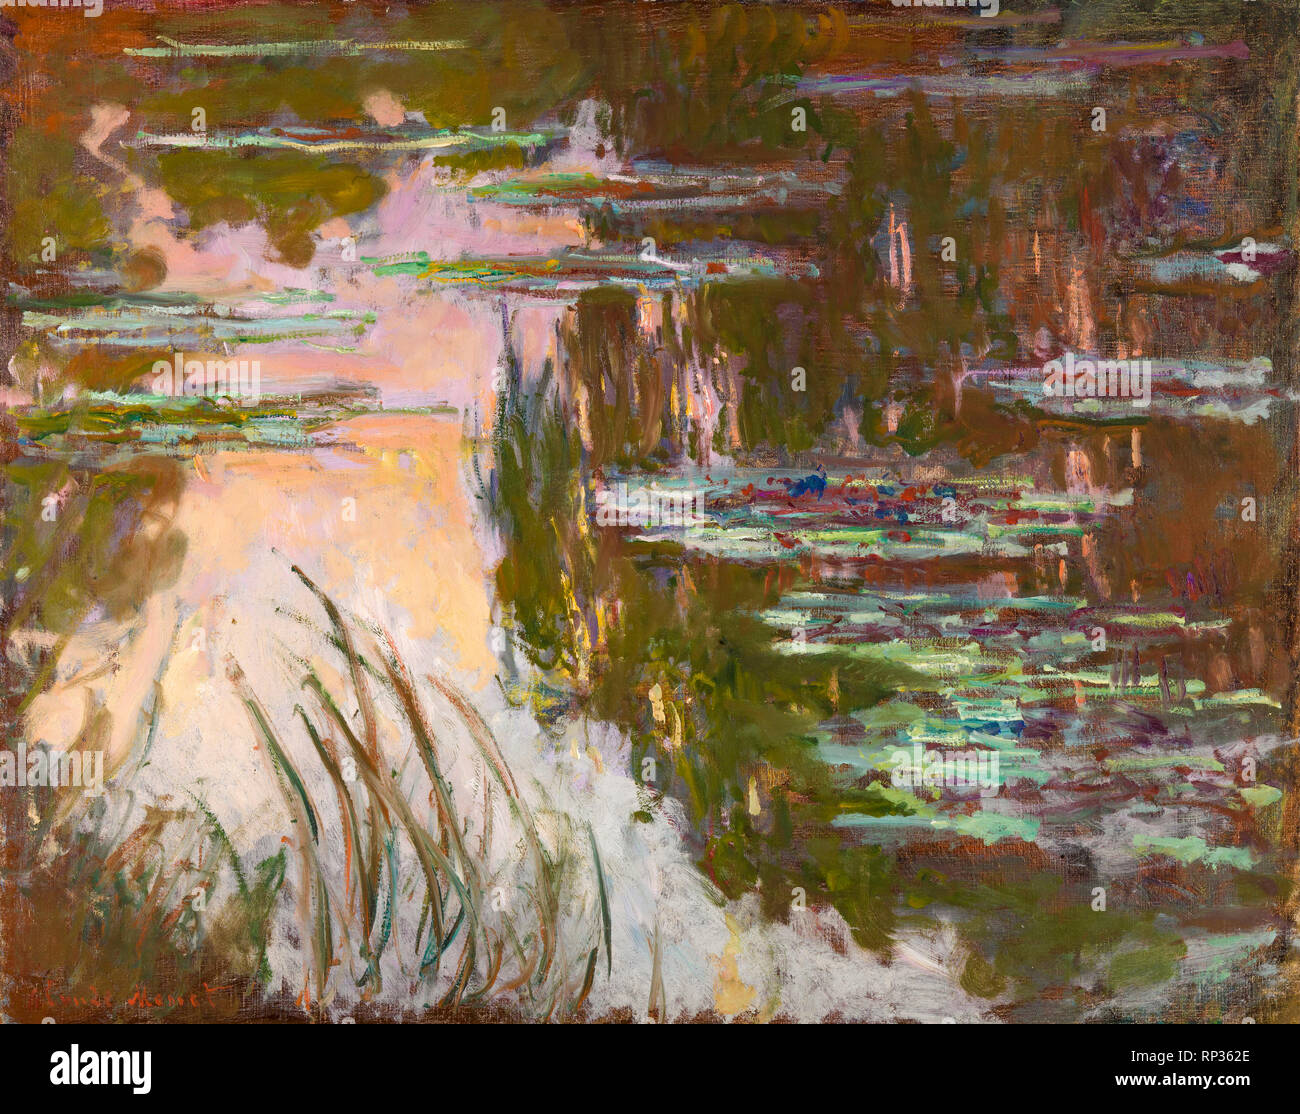 Les Nymphéas, Soleil couchant, Claude Monet, c. 1907, peinture Photo Stock  - Alamy